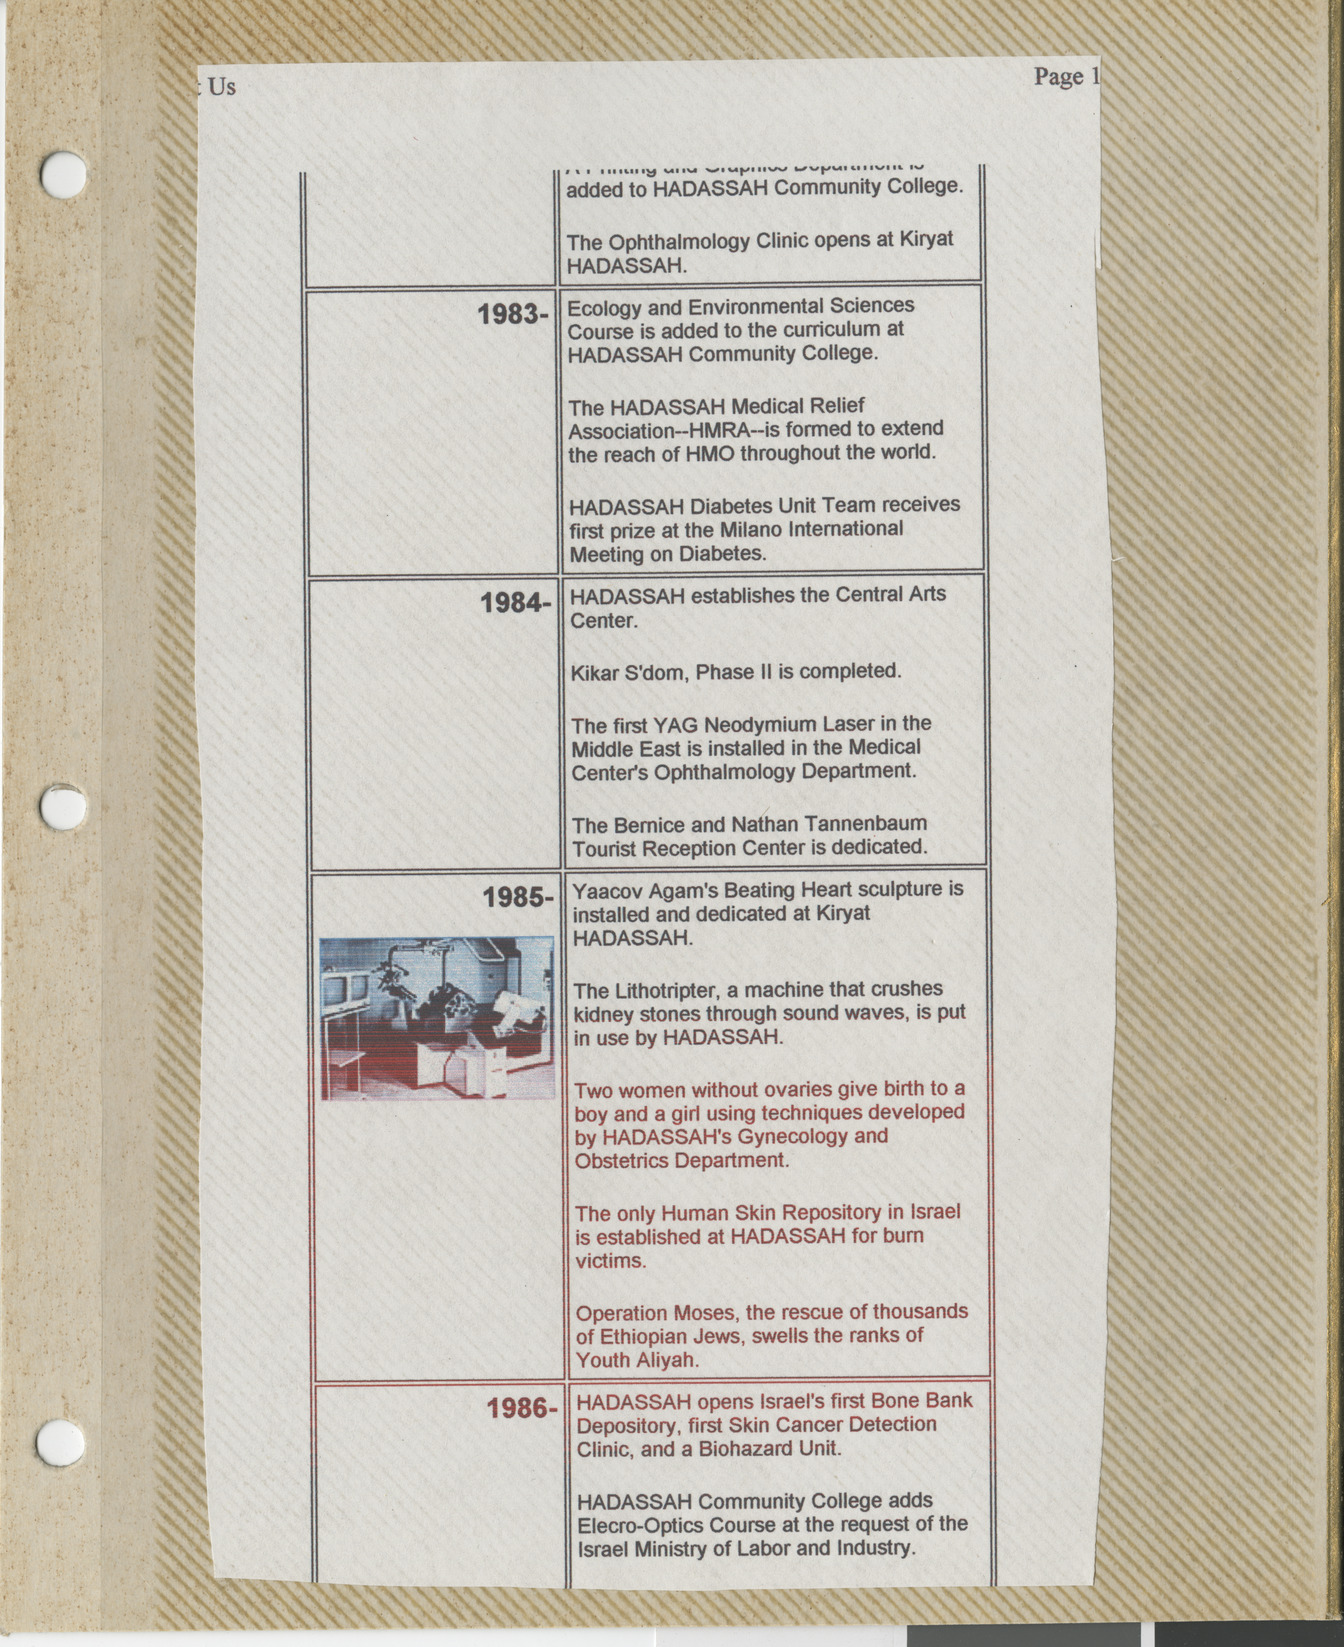 Clipping, Hadassah timeline 1983-1986